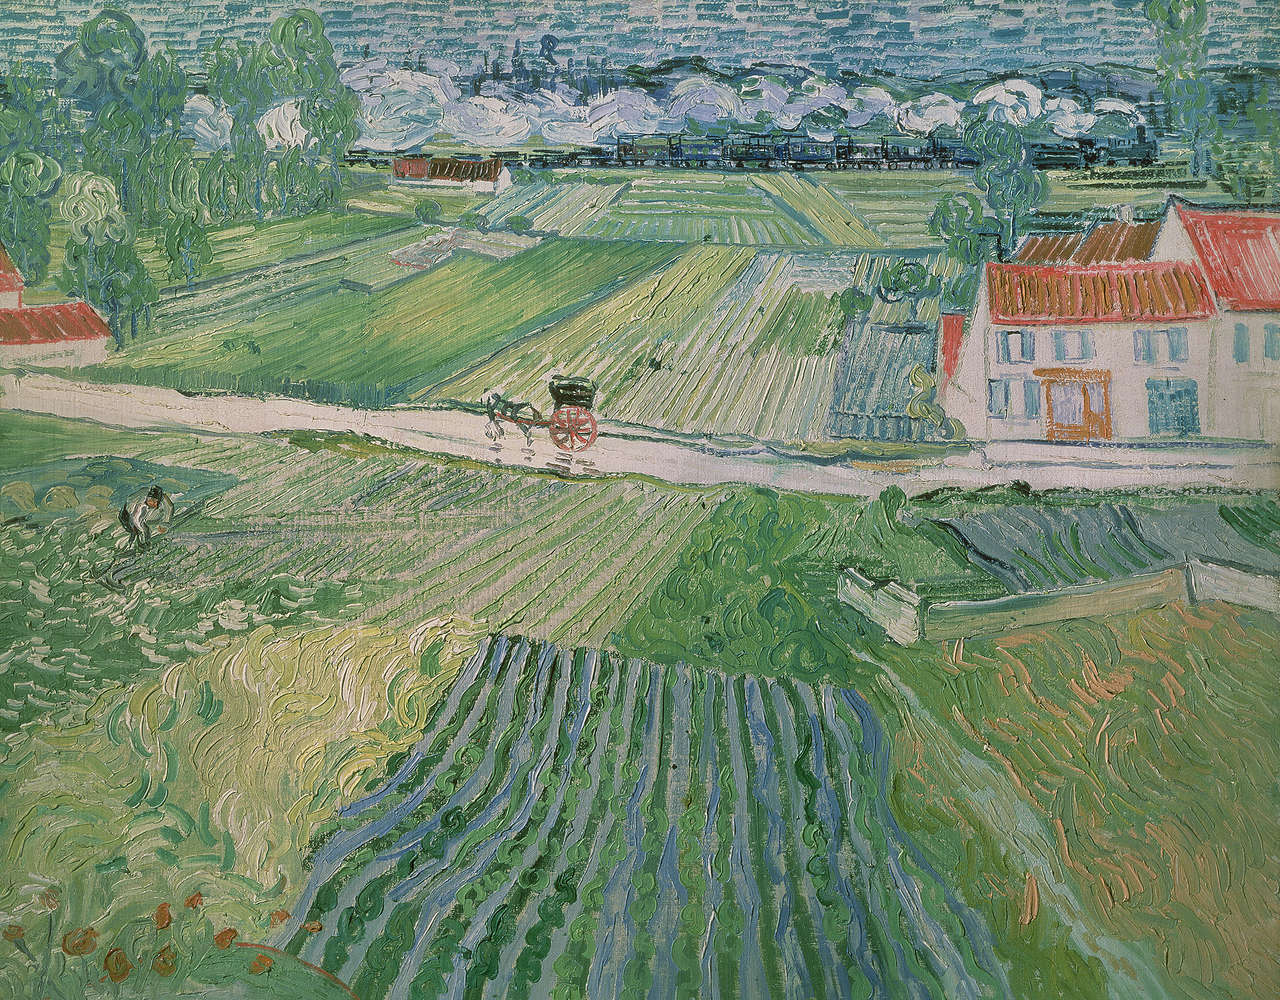             Fotomurali "Paesaggio vicino ad Auvers dopo la pioggia" di Vincent van Gogh
        